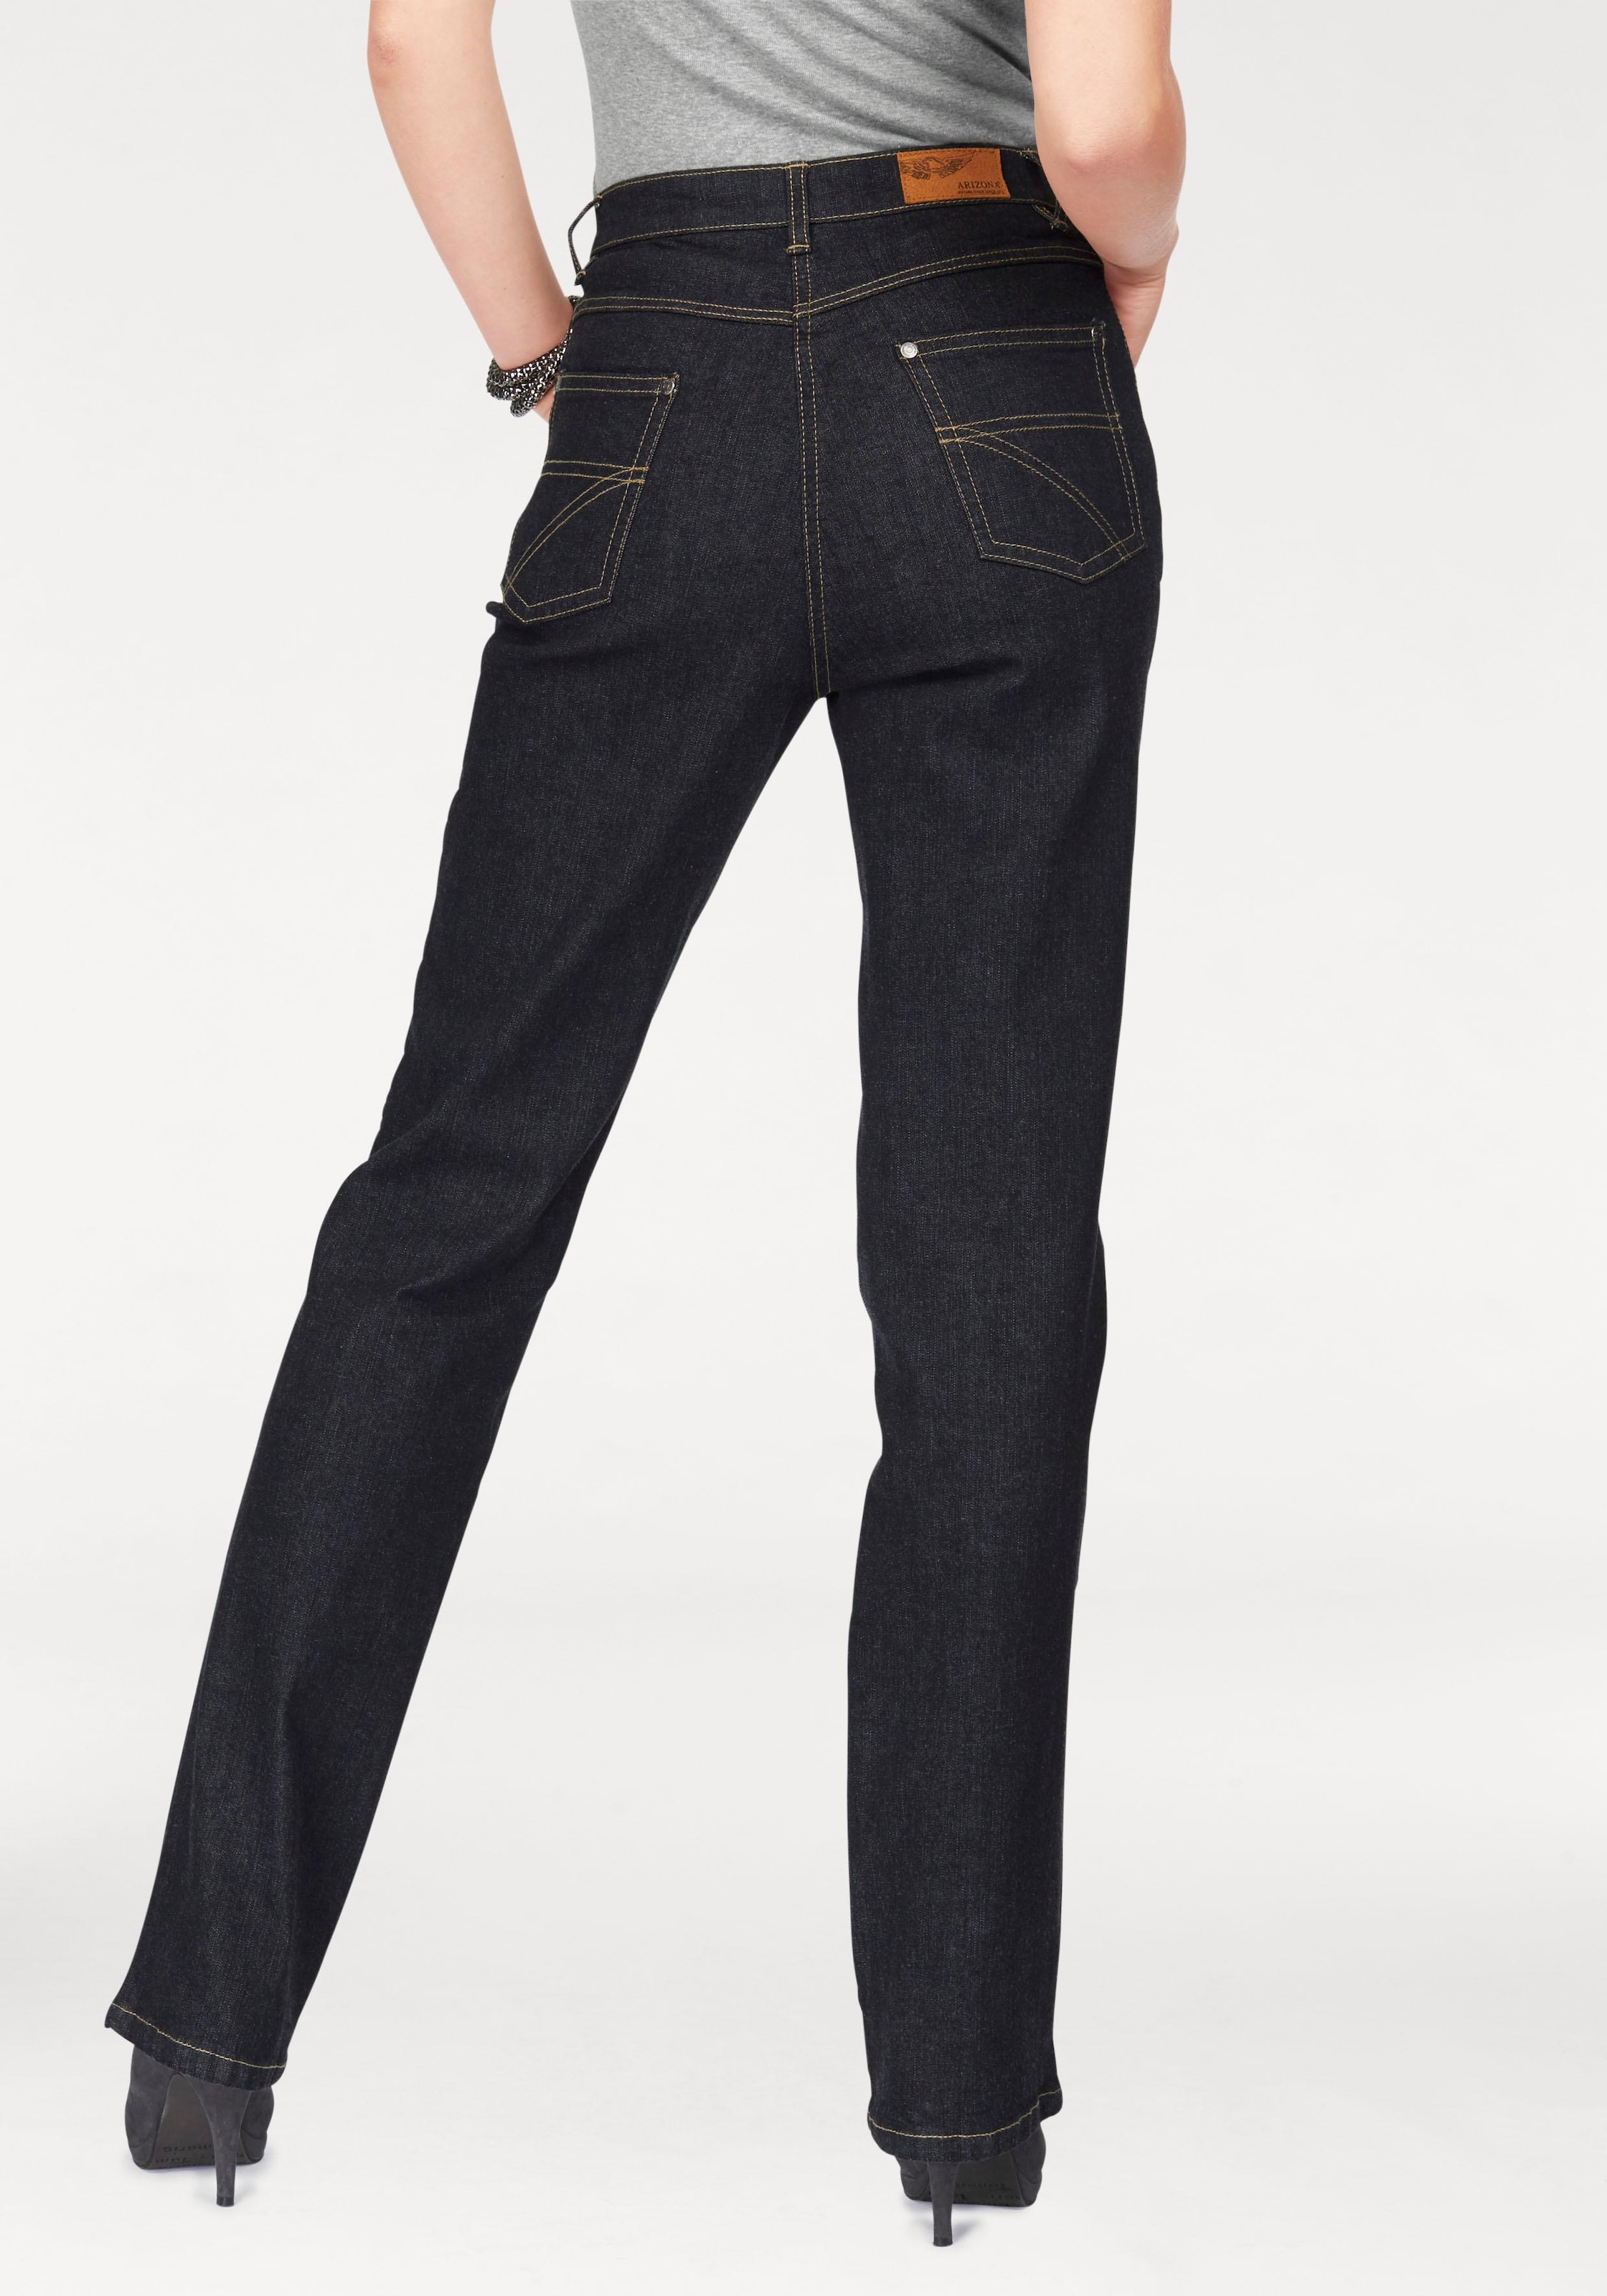 Arizona kaufen Jeans Gerade »Annett«, High online Waist